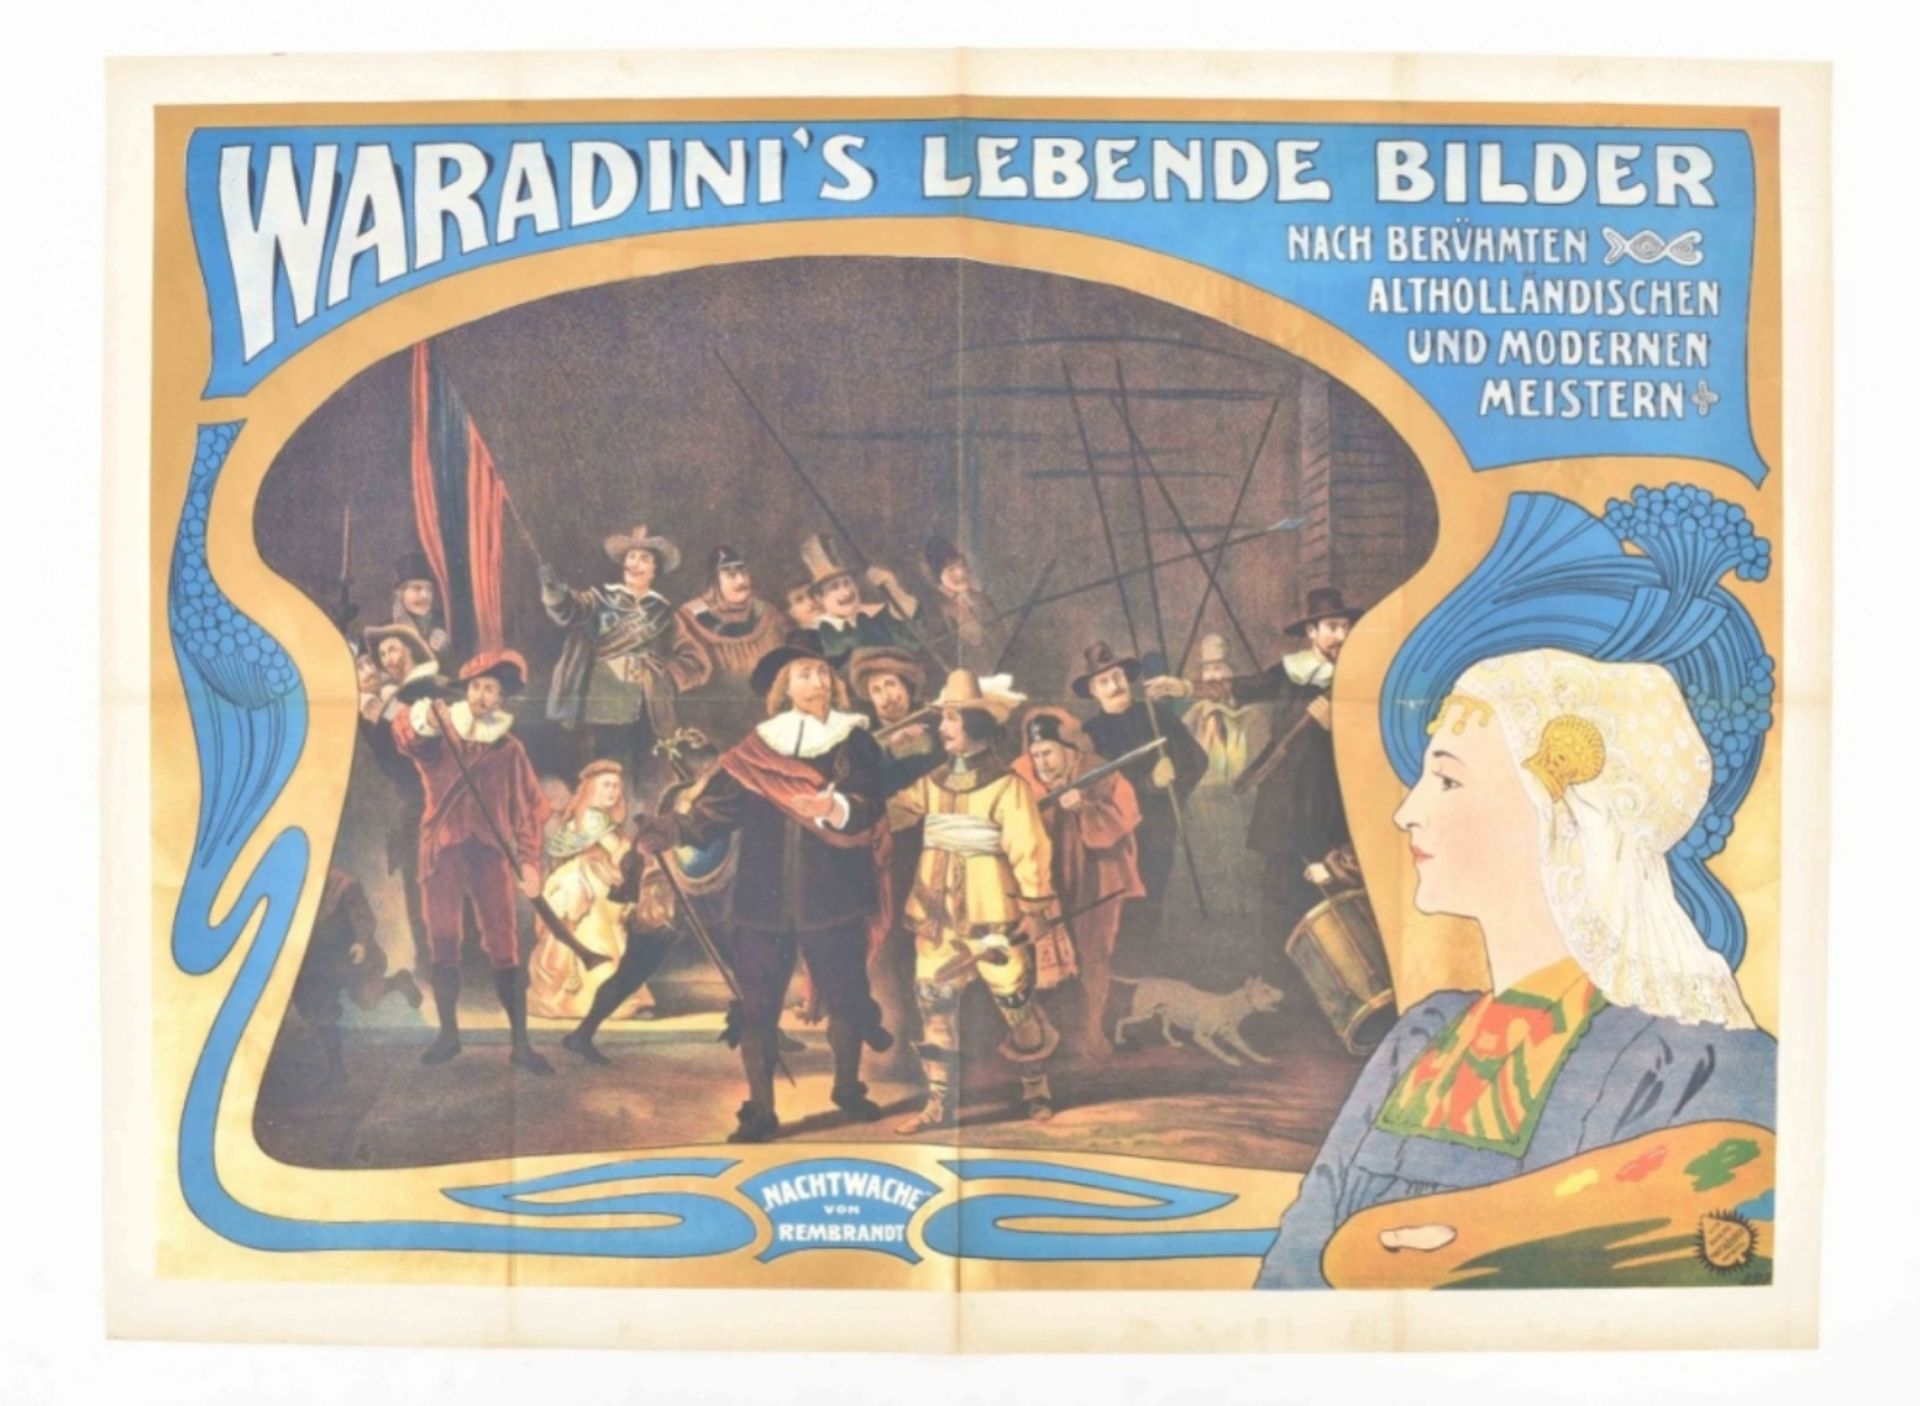  [Rembrandt. Tableau vivant] Waradini's lebende Bilder nach berühmten altholländischen - Image 5 of 5